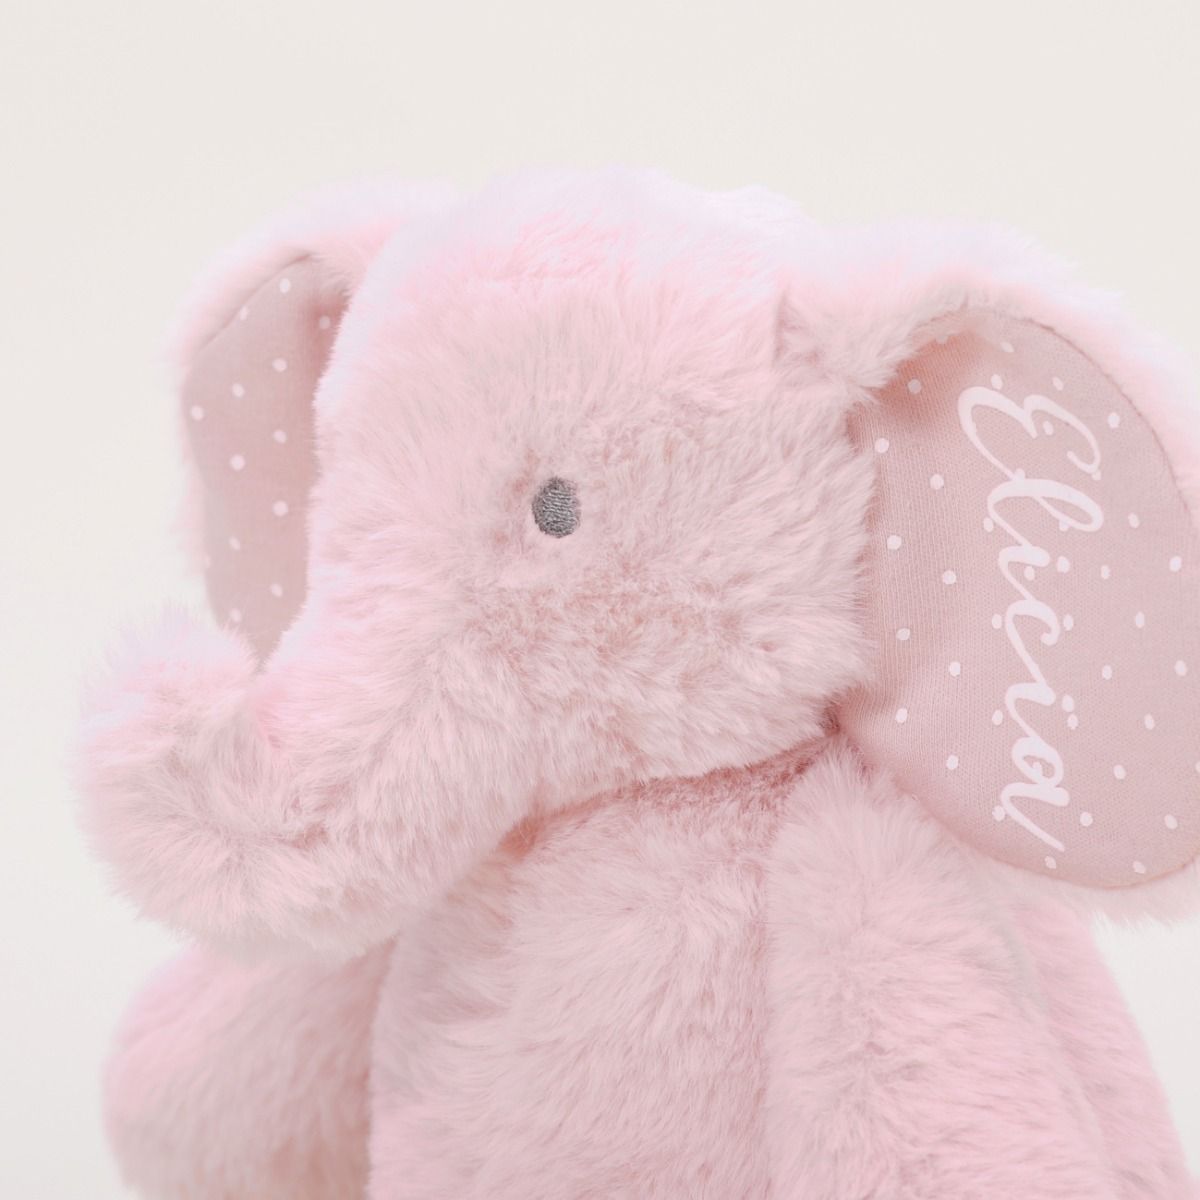 Brinquedo macio de elefante cor-de-rosa personalizado